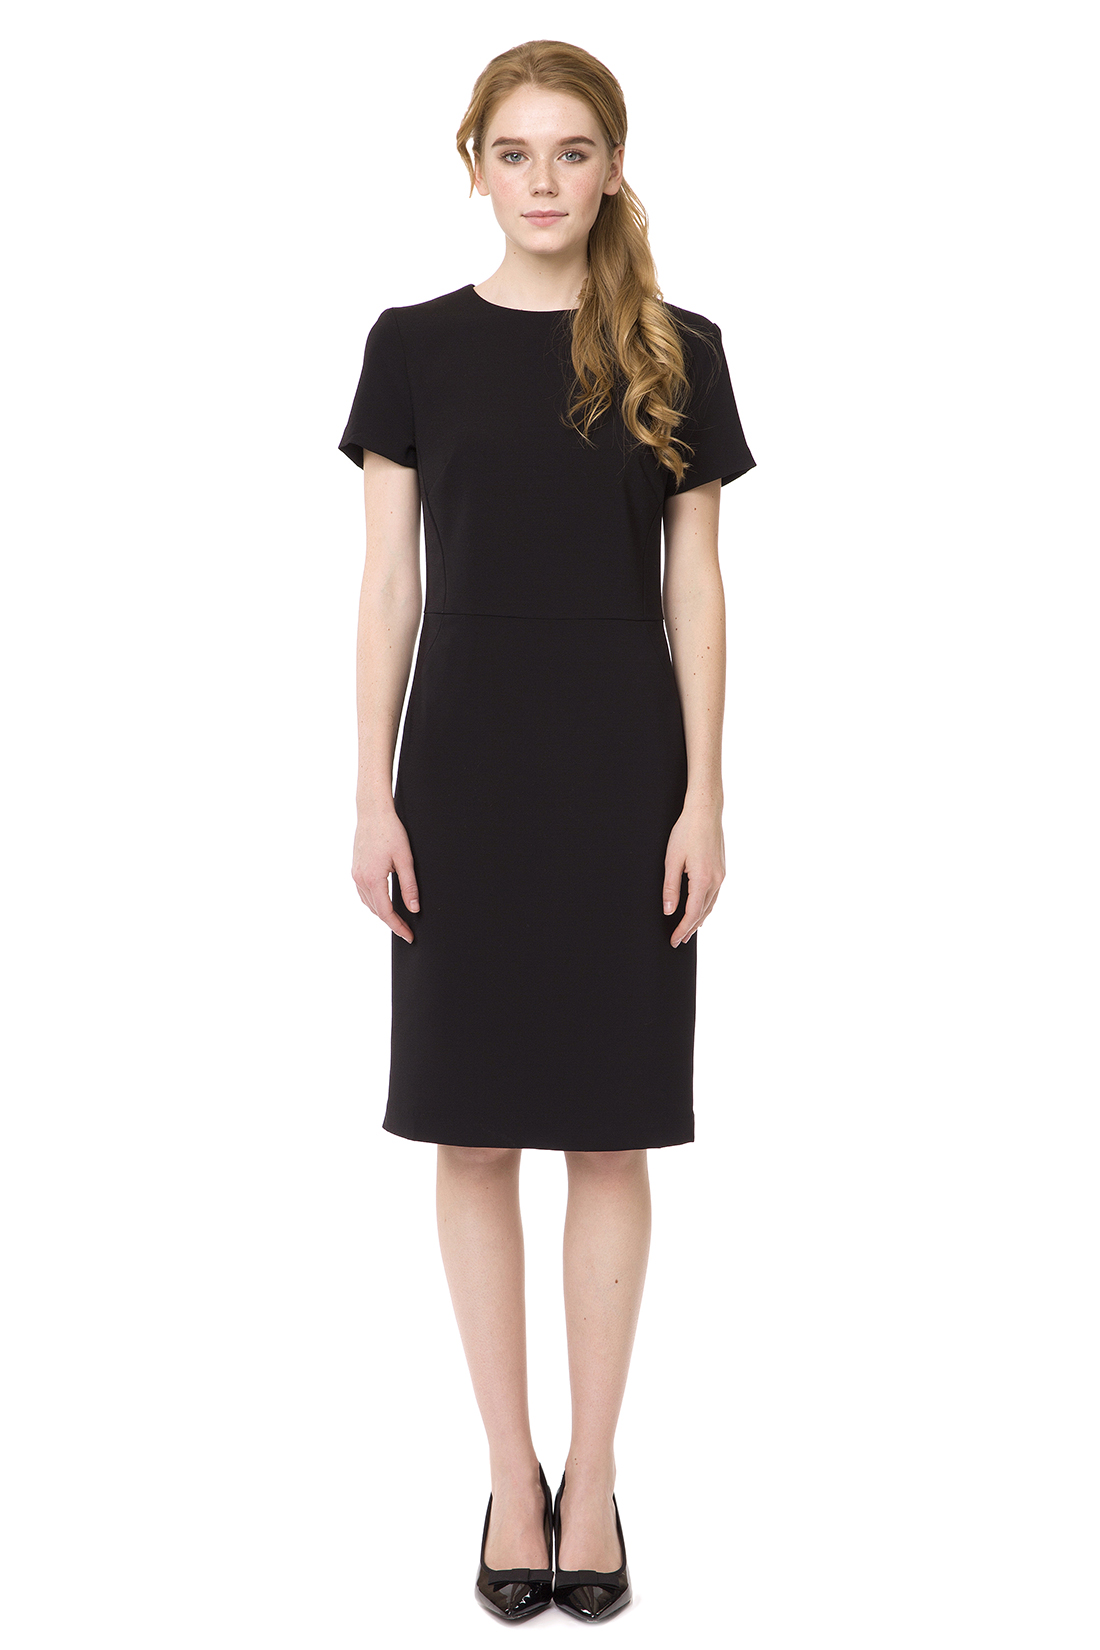 Приталенное чёрное платье (арт. baon B457072), размер L, цвет черный Приталенное чёрное платье (арт. baon B457072) - фото 1